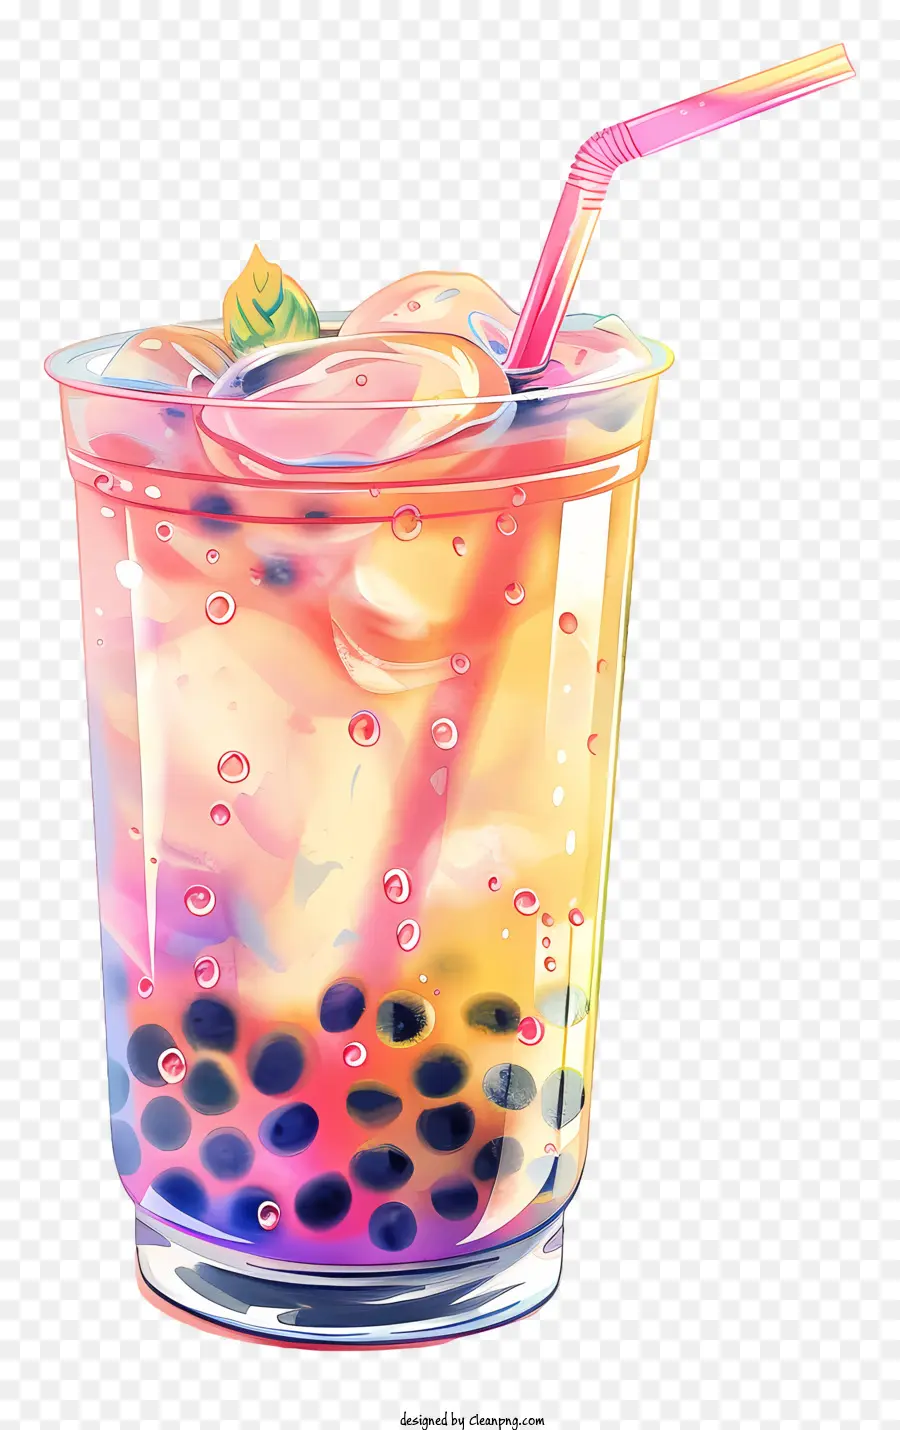 bong bóng trà - Đồ uống đầy màu sắc với bong bóng, vui tươi và hấp dẫn